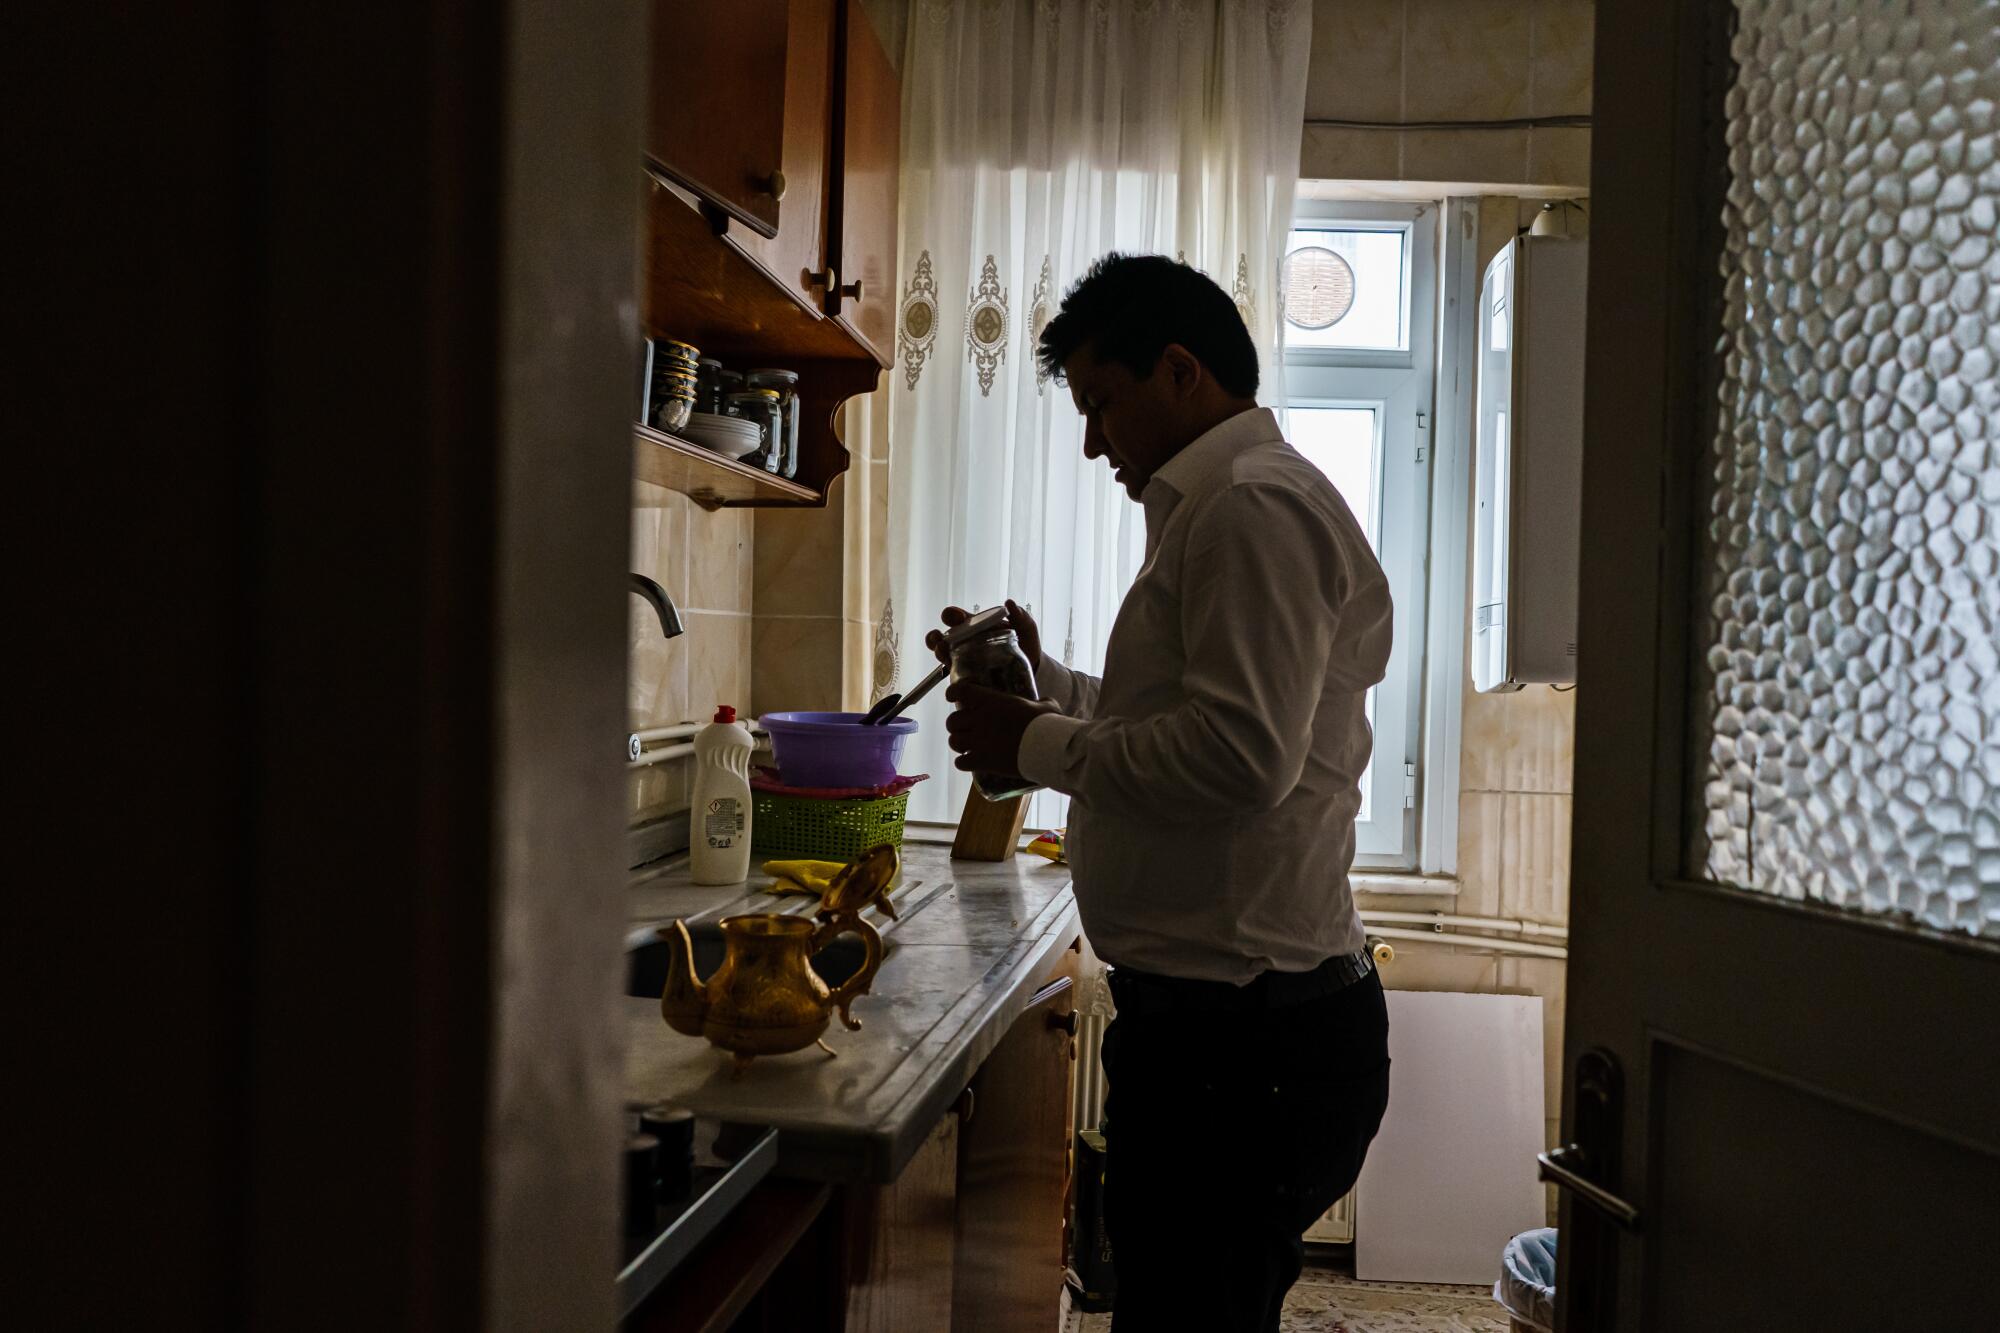 A man holds a jar near a kitchen counter